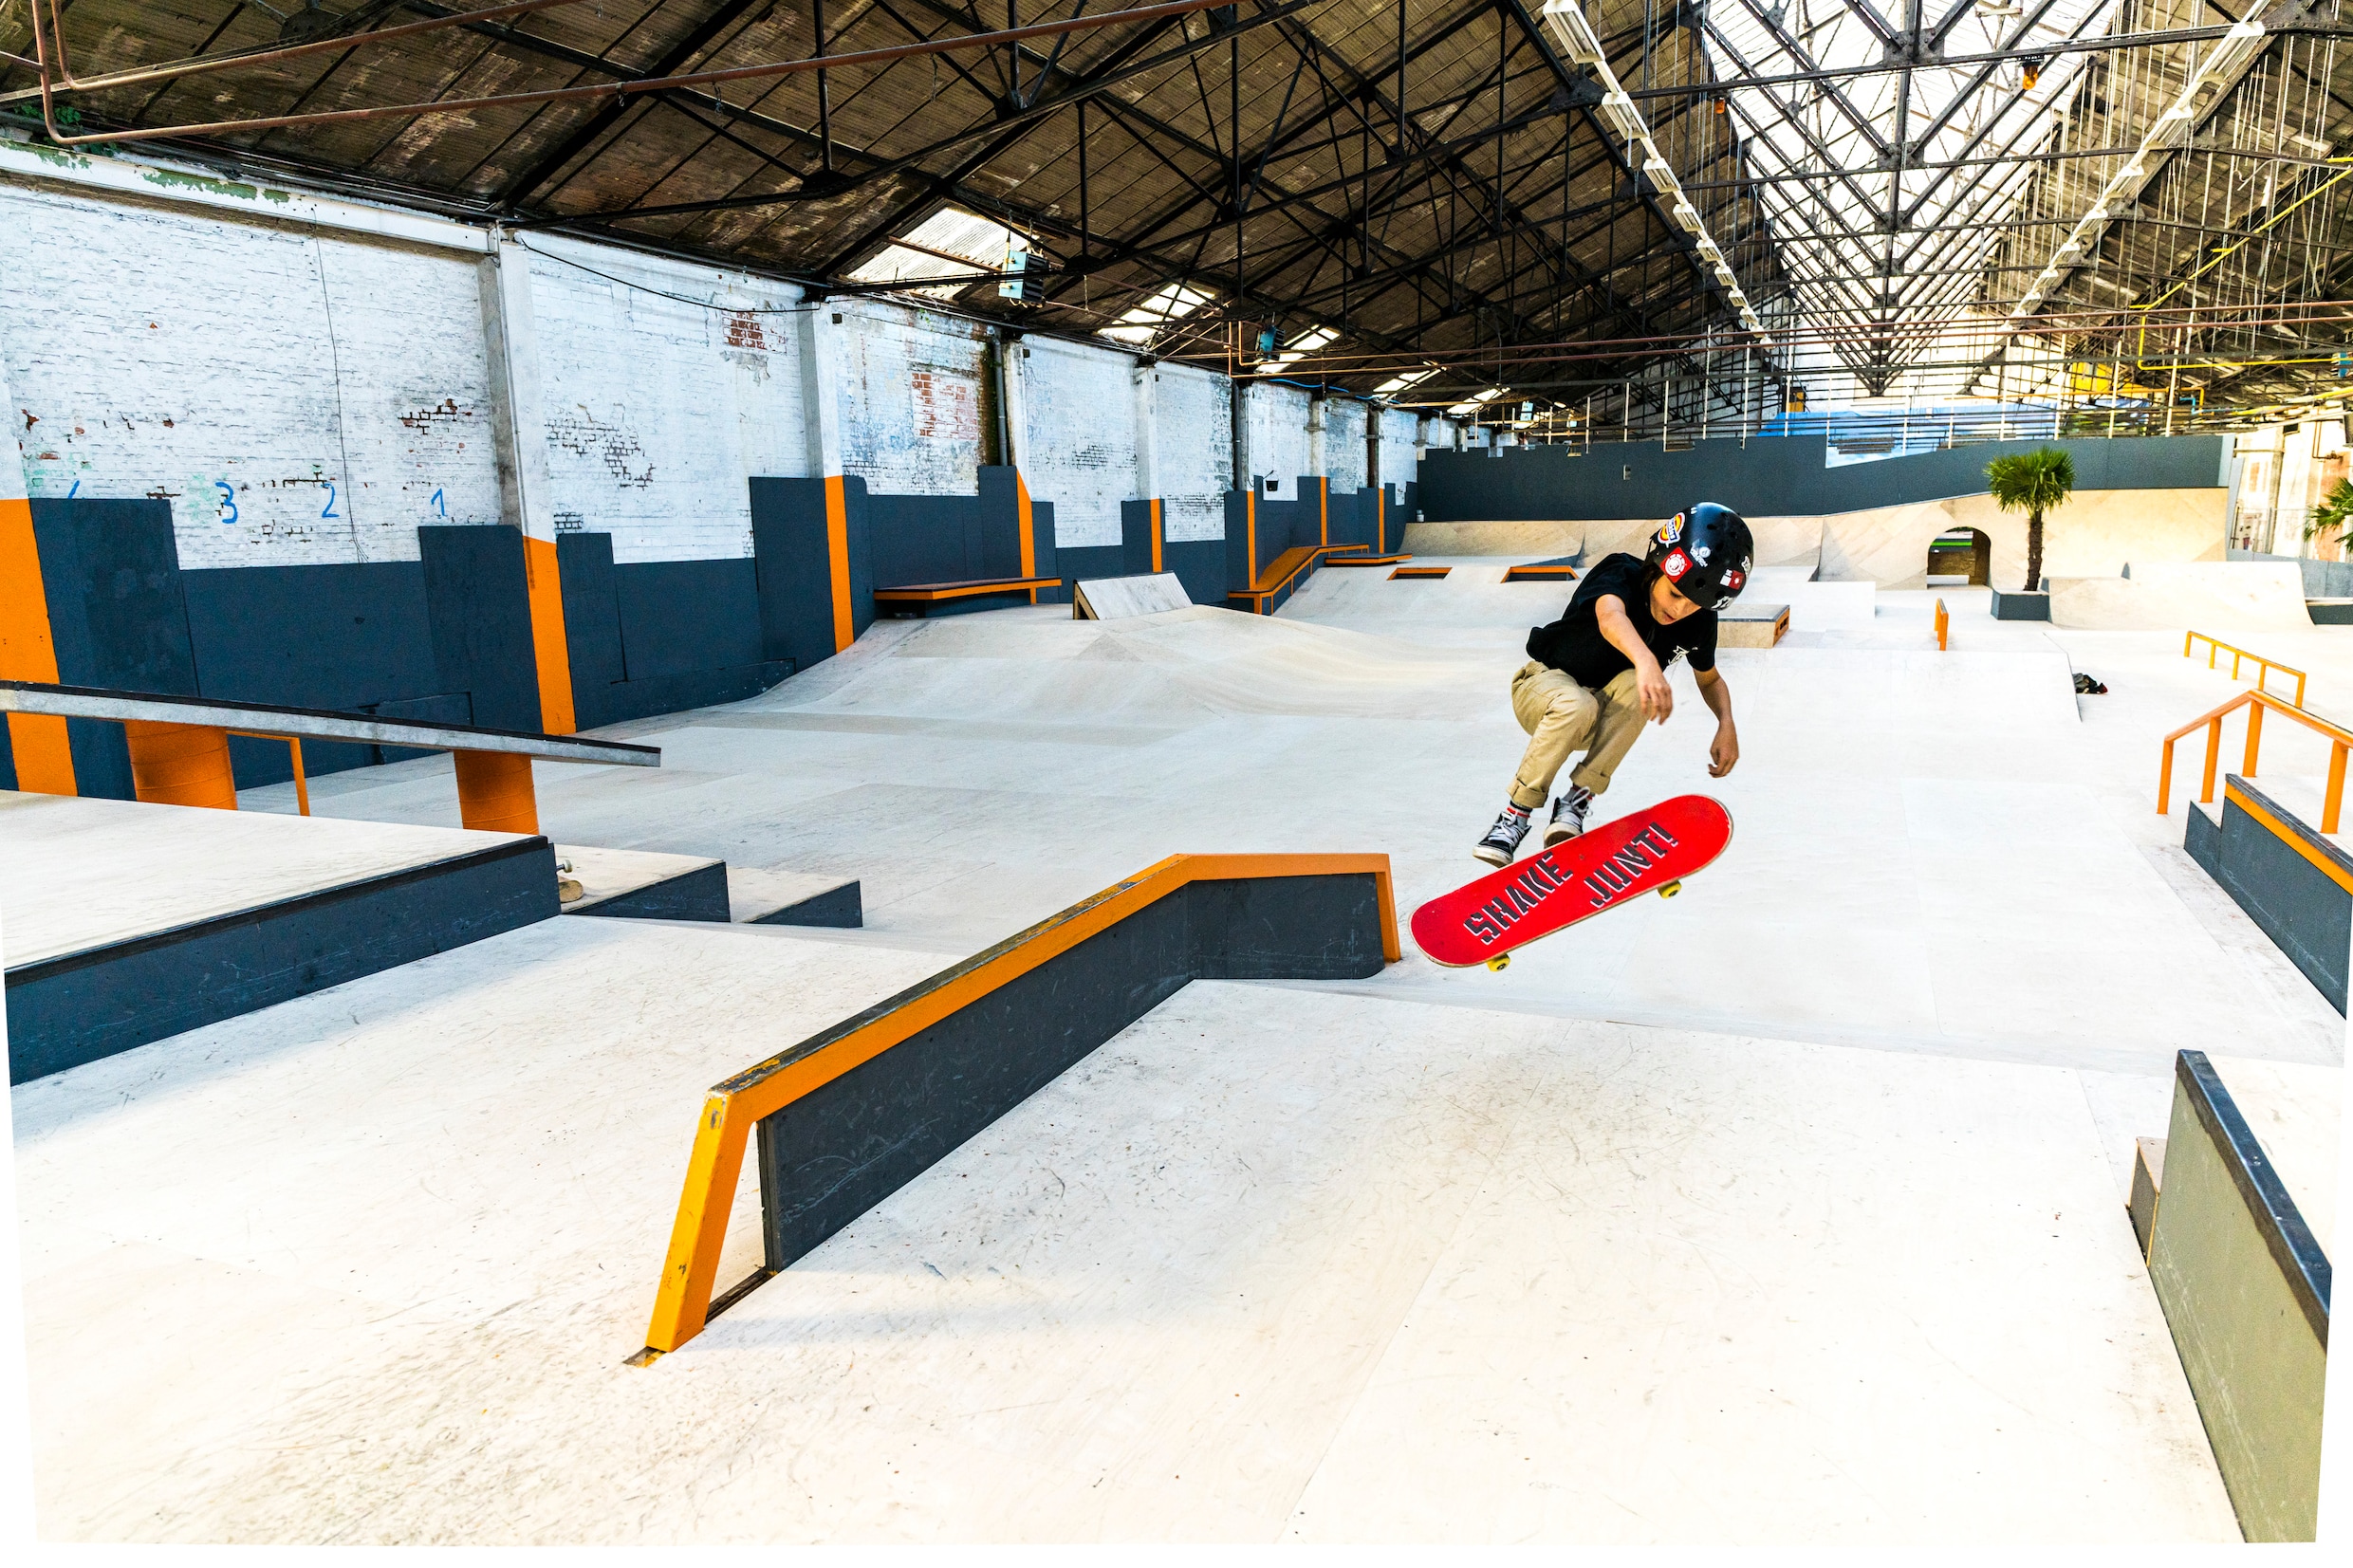 Grootste indoorskatepark van België opent dit weekend de deuren: ‘Skaten is een levensstijl’